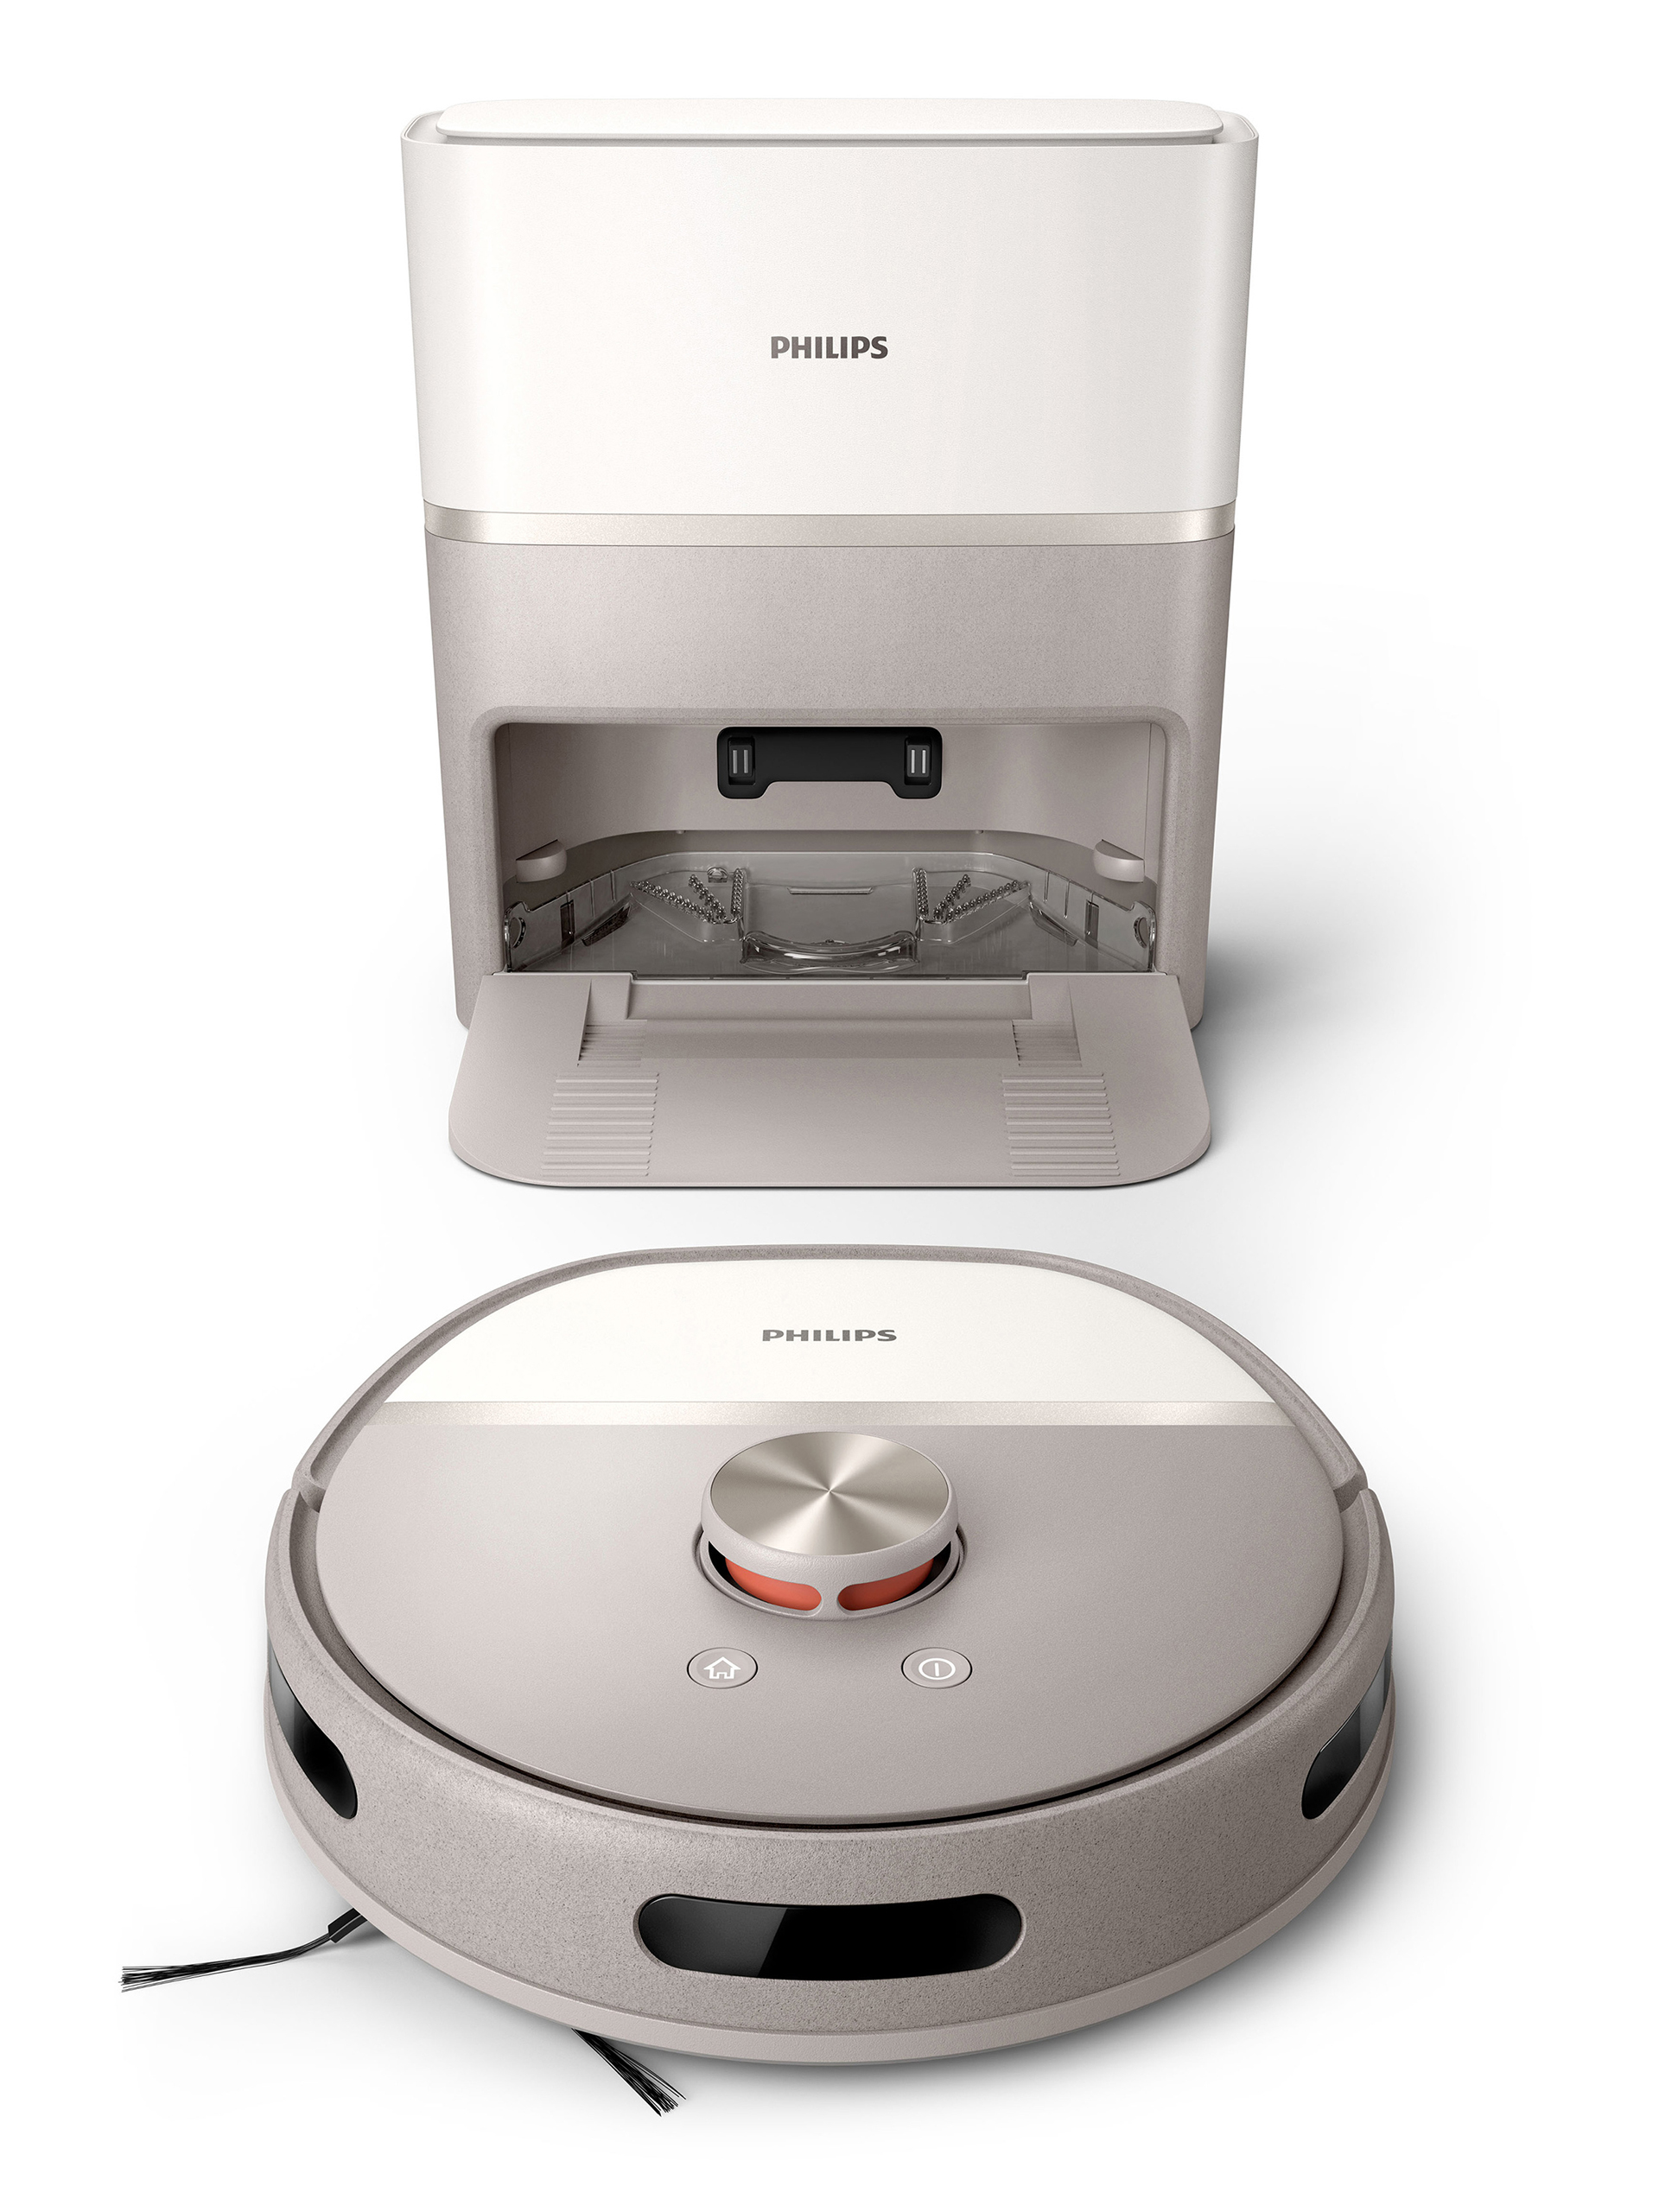 Philips Auto-Washing Robot Vacuum Cleaner 6000 Ser